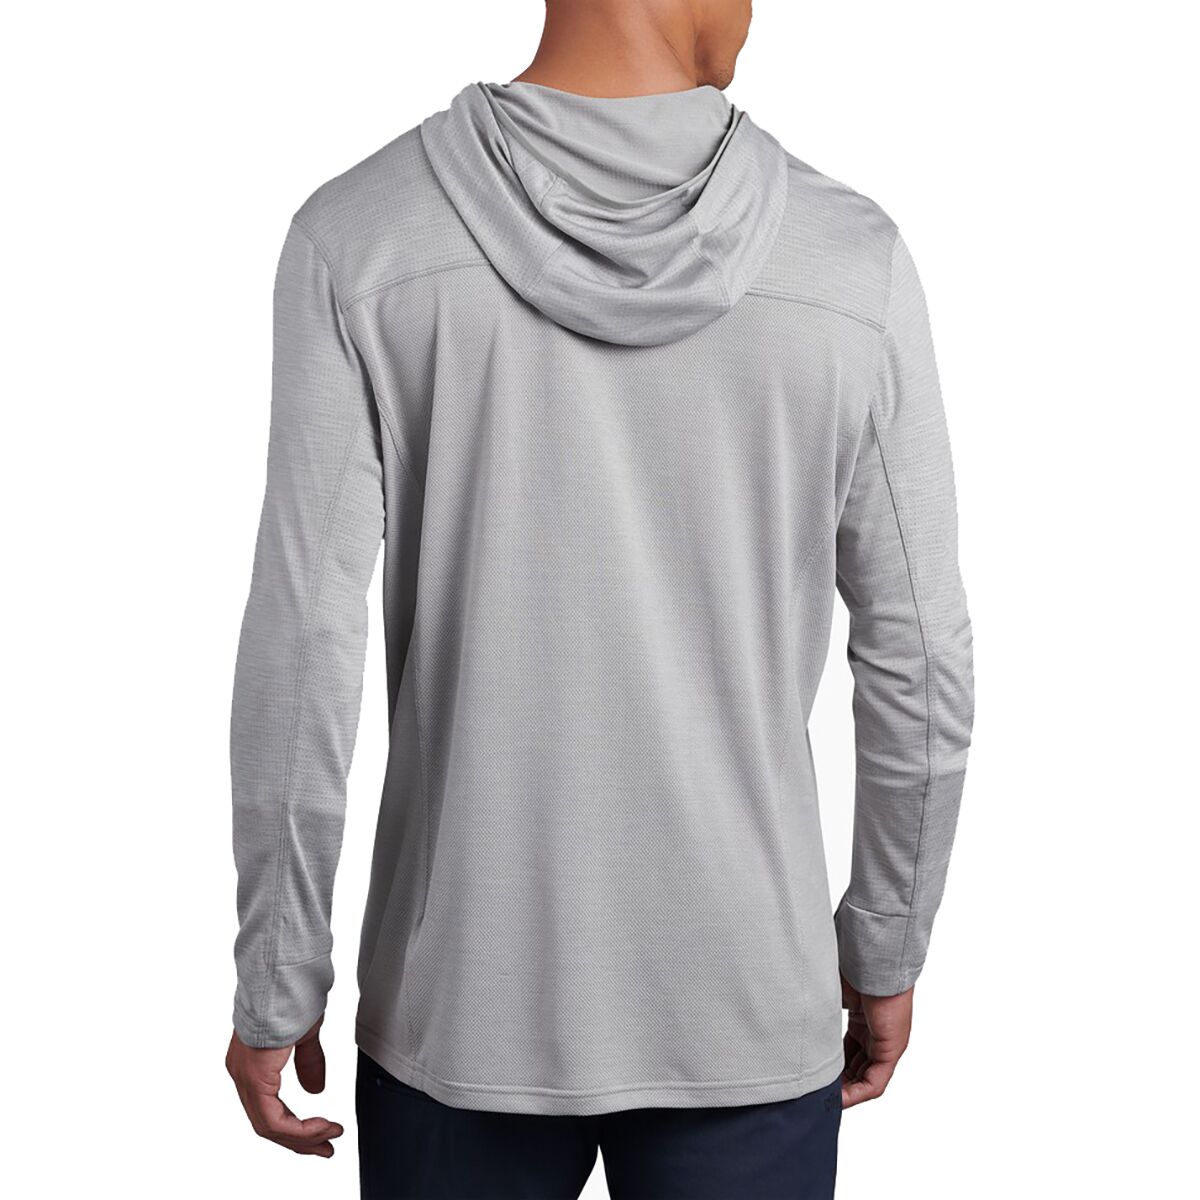 KUHL Engineered Hooded Shirt - Men's - Clothing